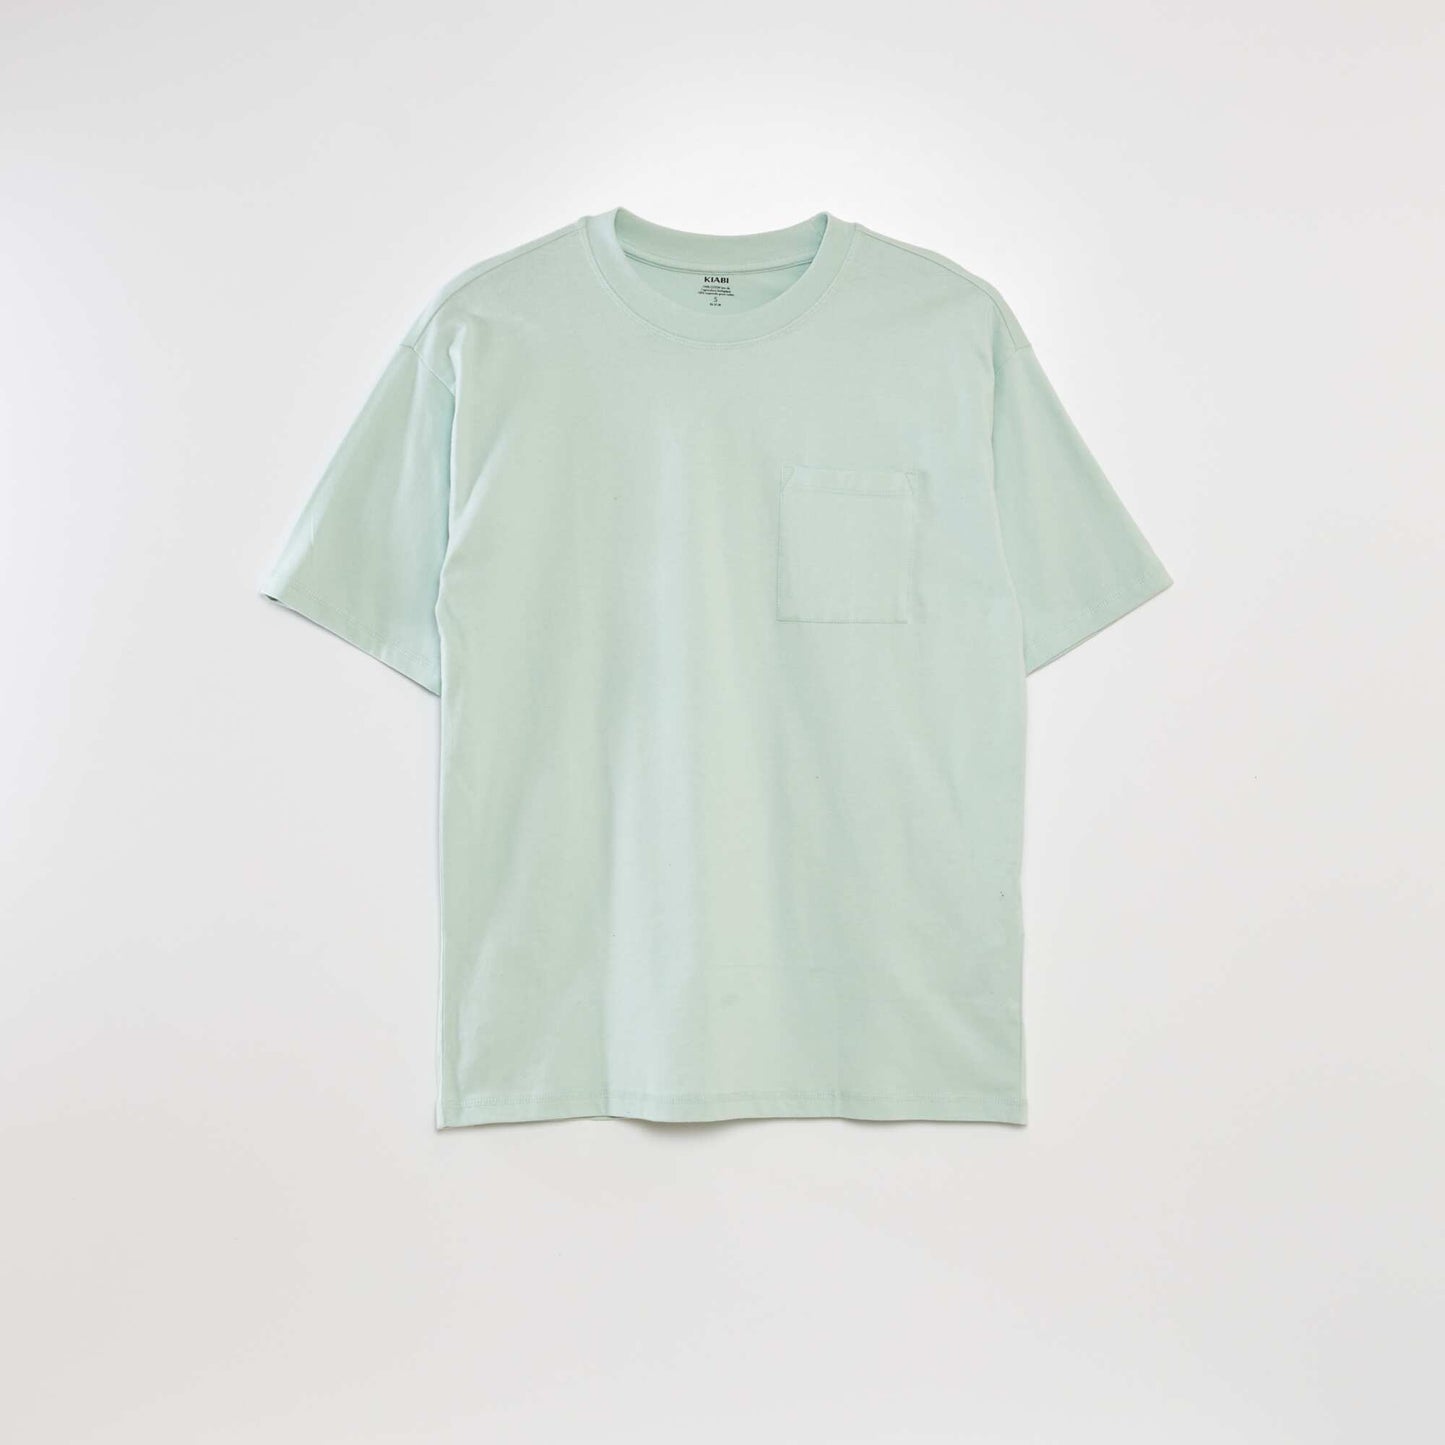 Plain loose-fit T-shirt blue